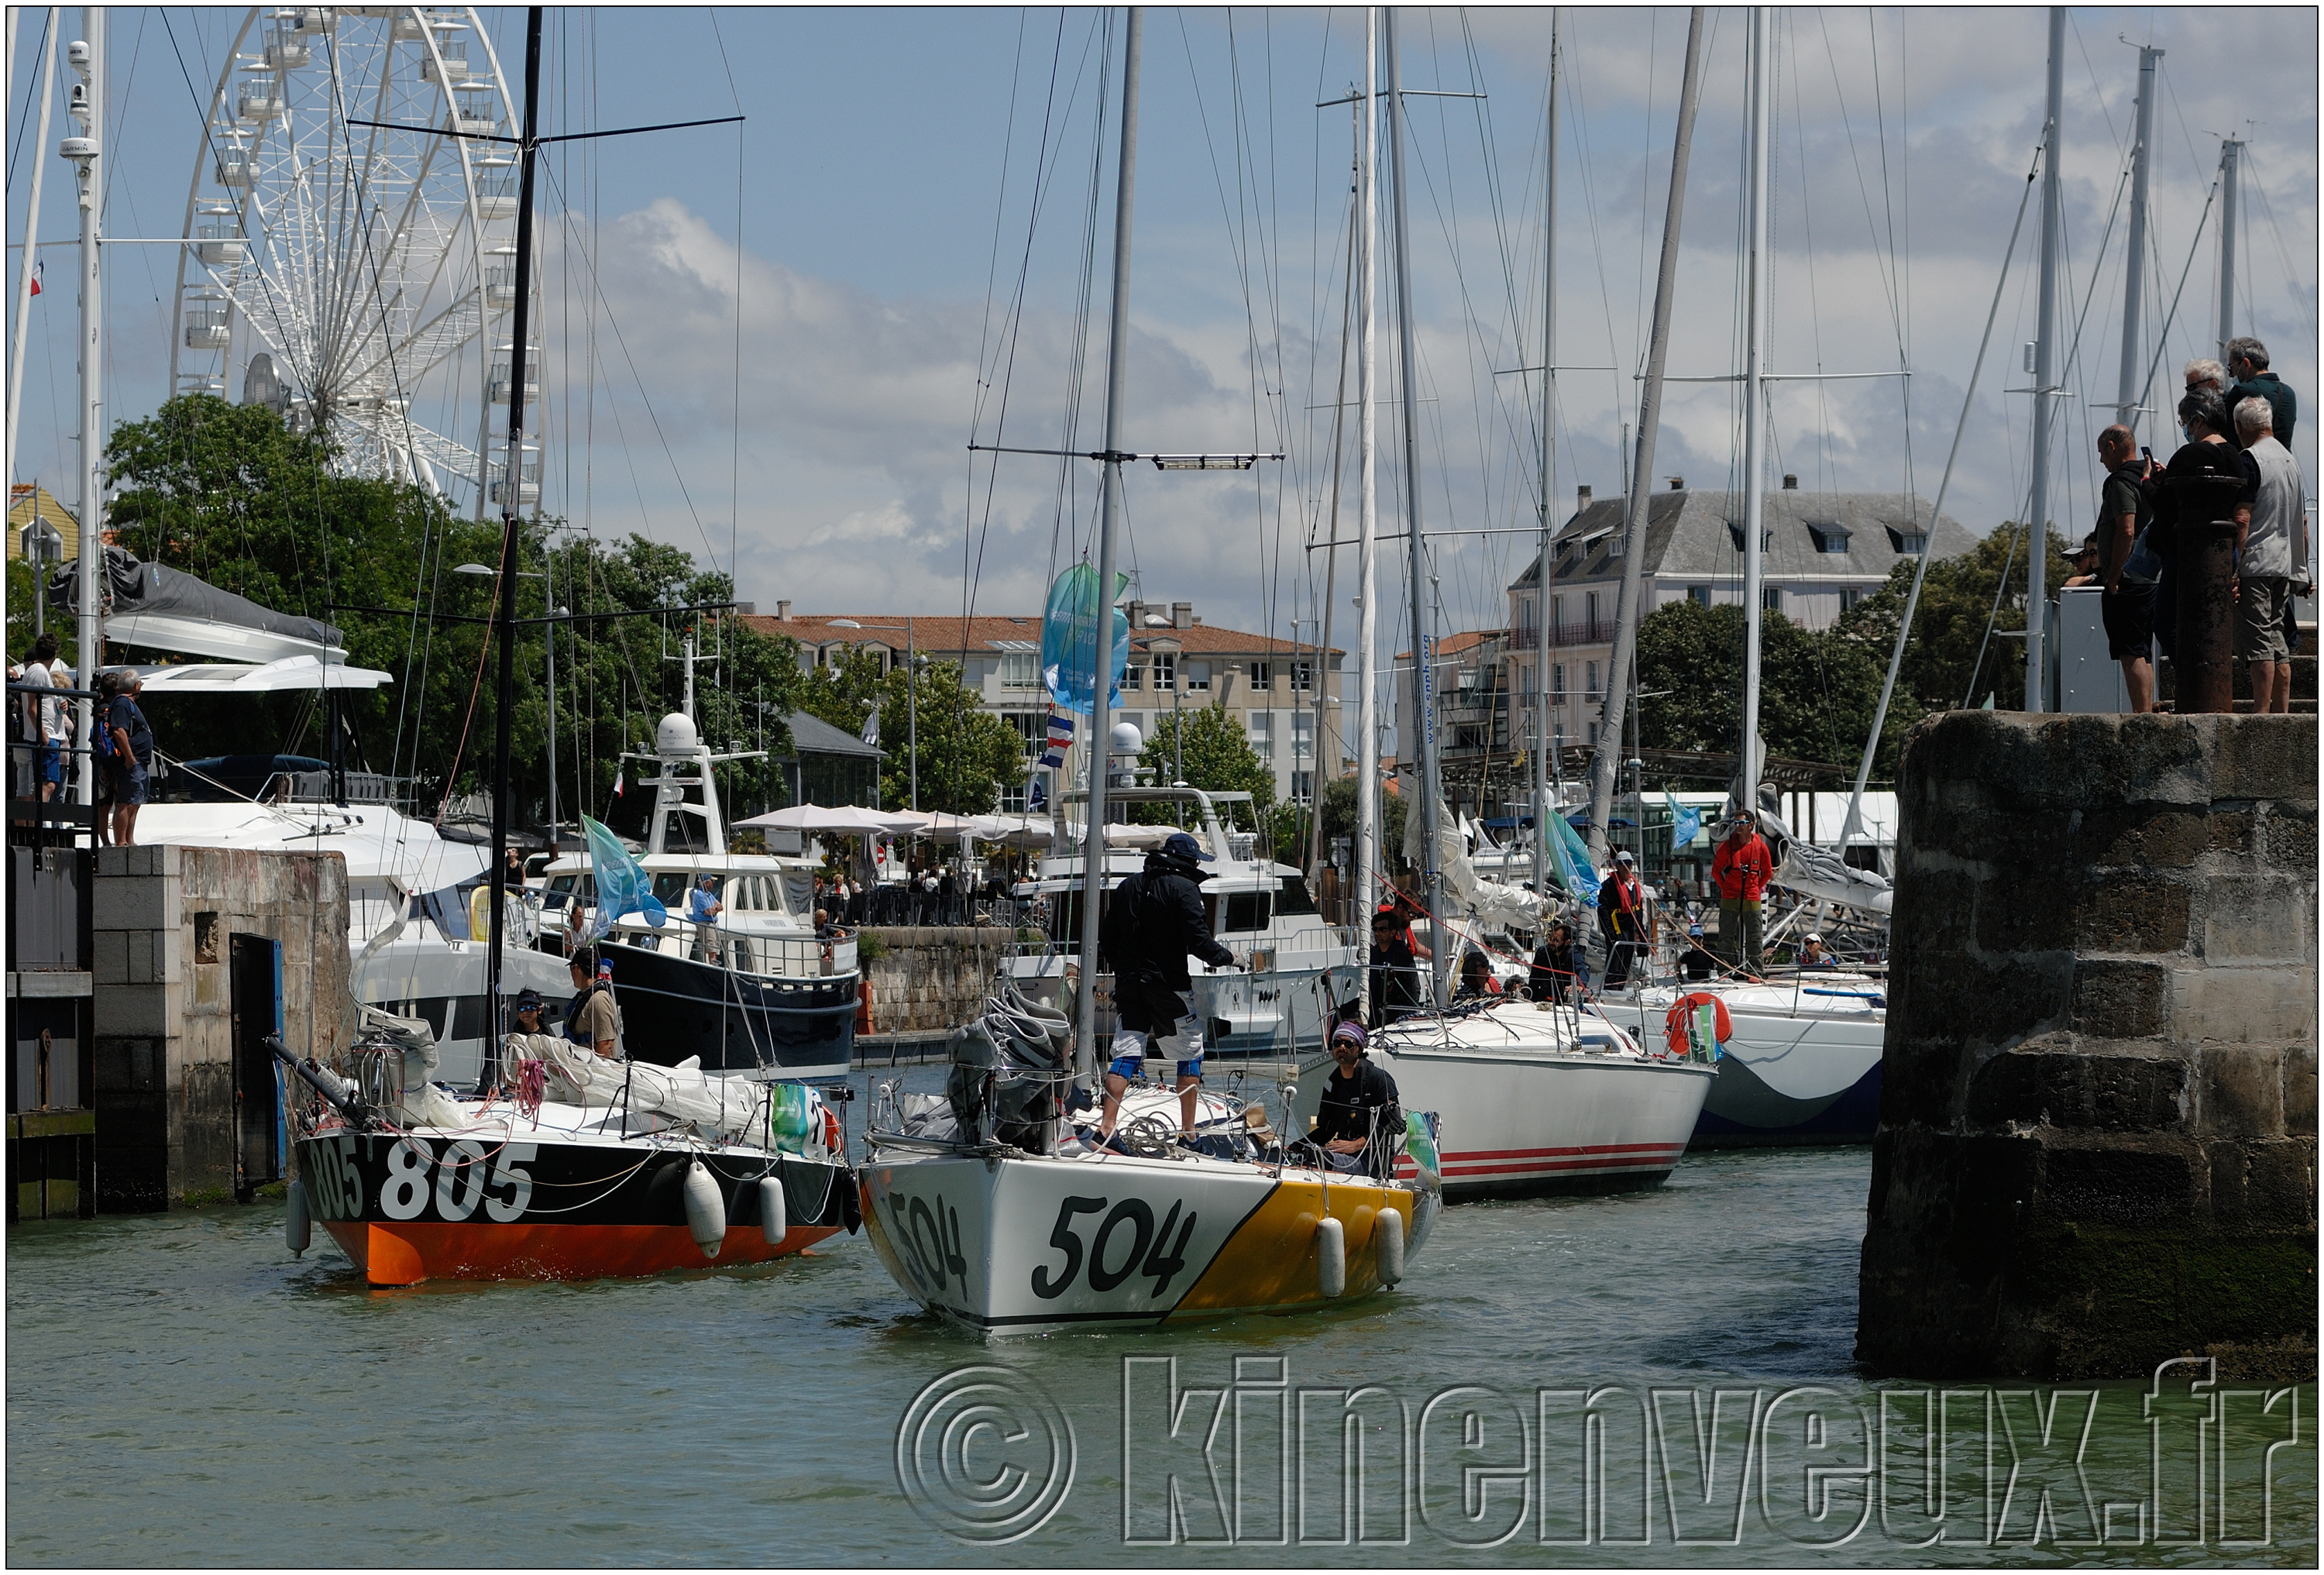 kinenveux_TourVoile17_11.jpg - sortie du bassin des chalutiers de La Rochelle